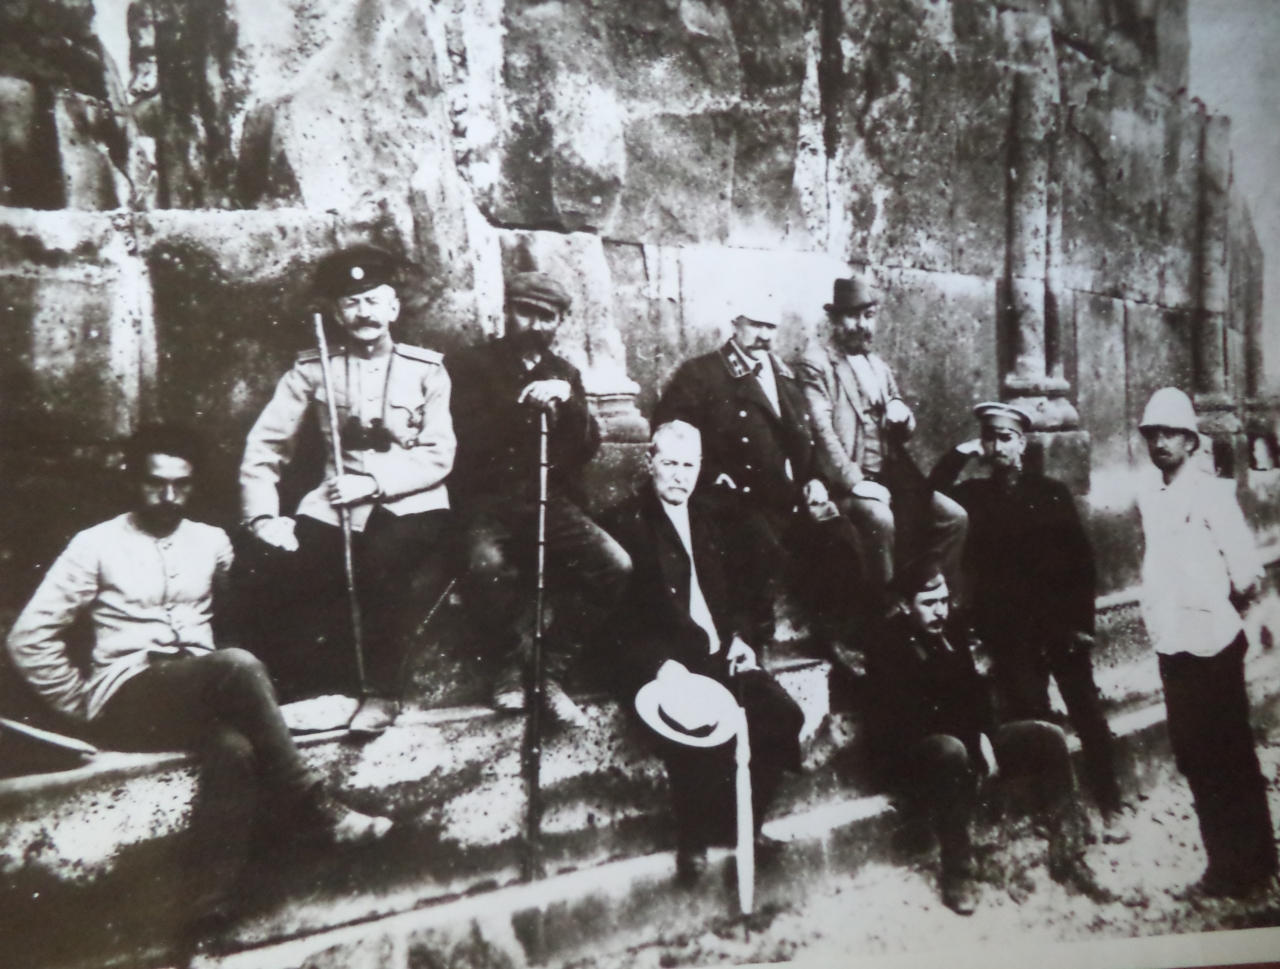 Հովսեփ  Օրբելին  Անիի  հնագիտական  արշավախմբի  անդամների  հետ